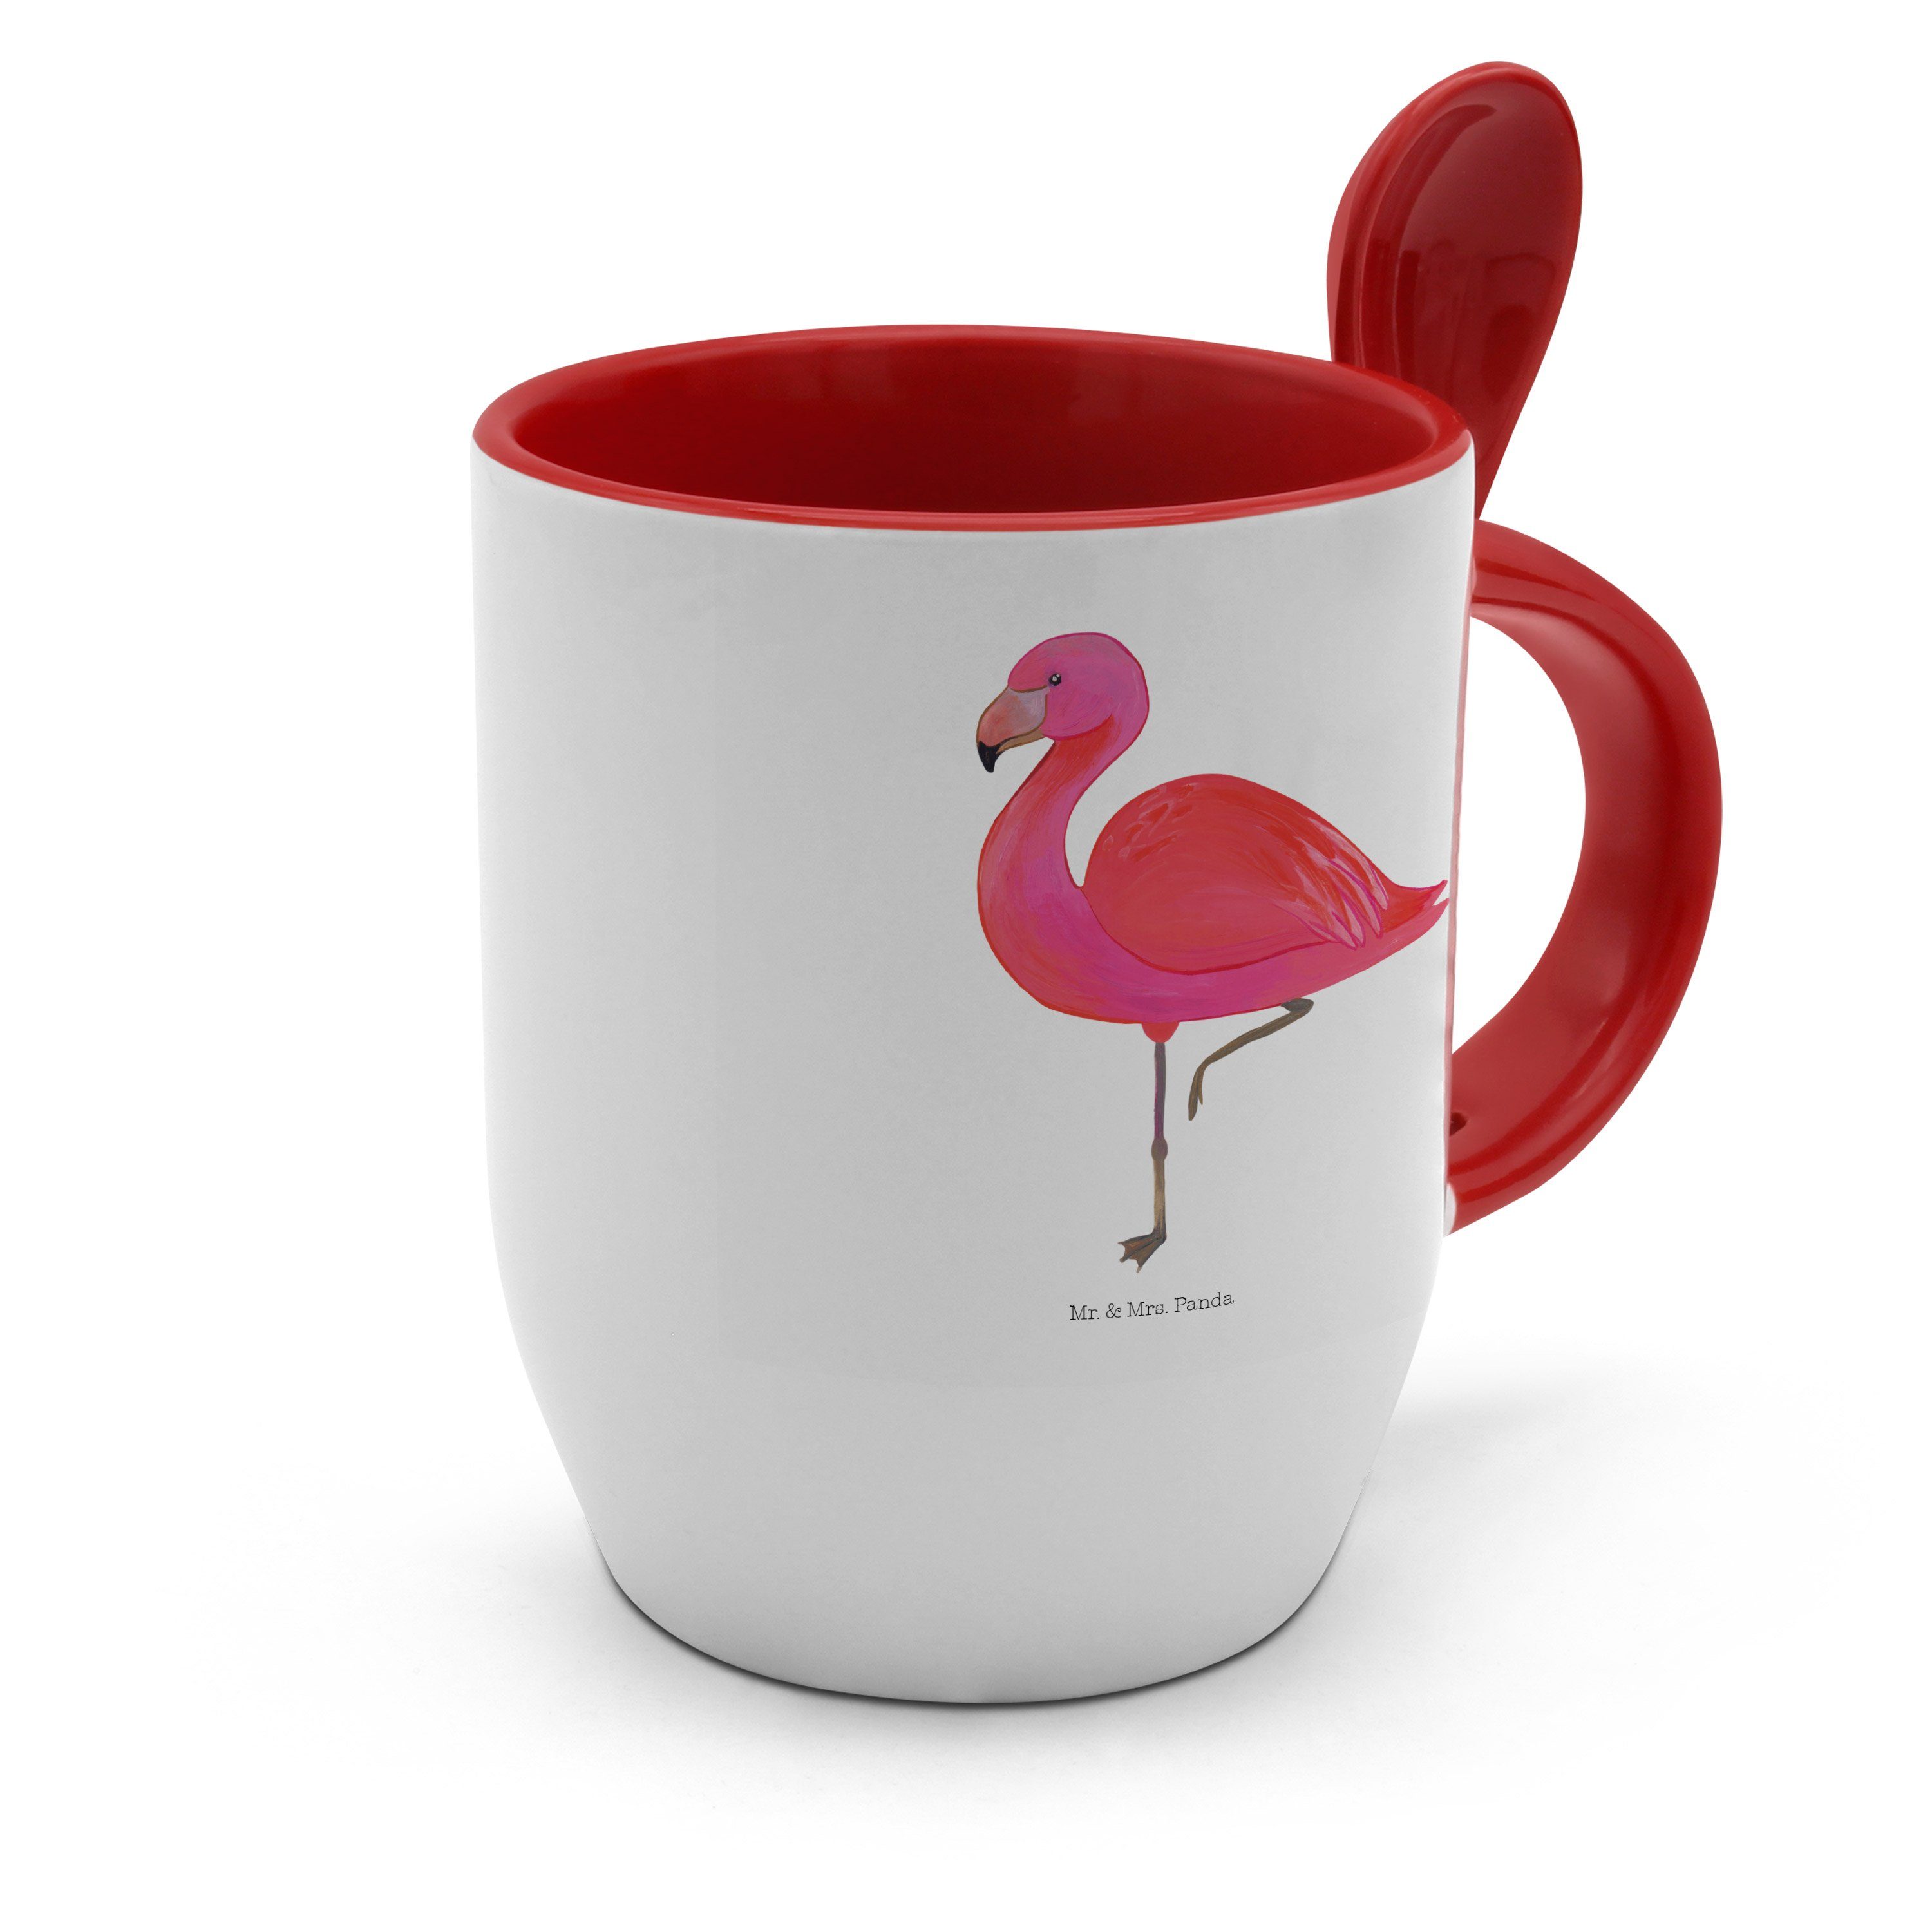 ich, glücklich, mit classic Löffel, Mrs. Flamingo Keramik - Panda & Weiß Mr. Tasse Tasse Geschenk, -